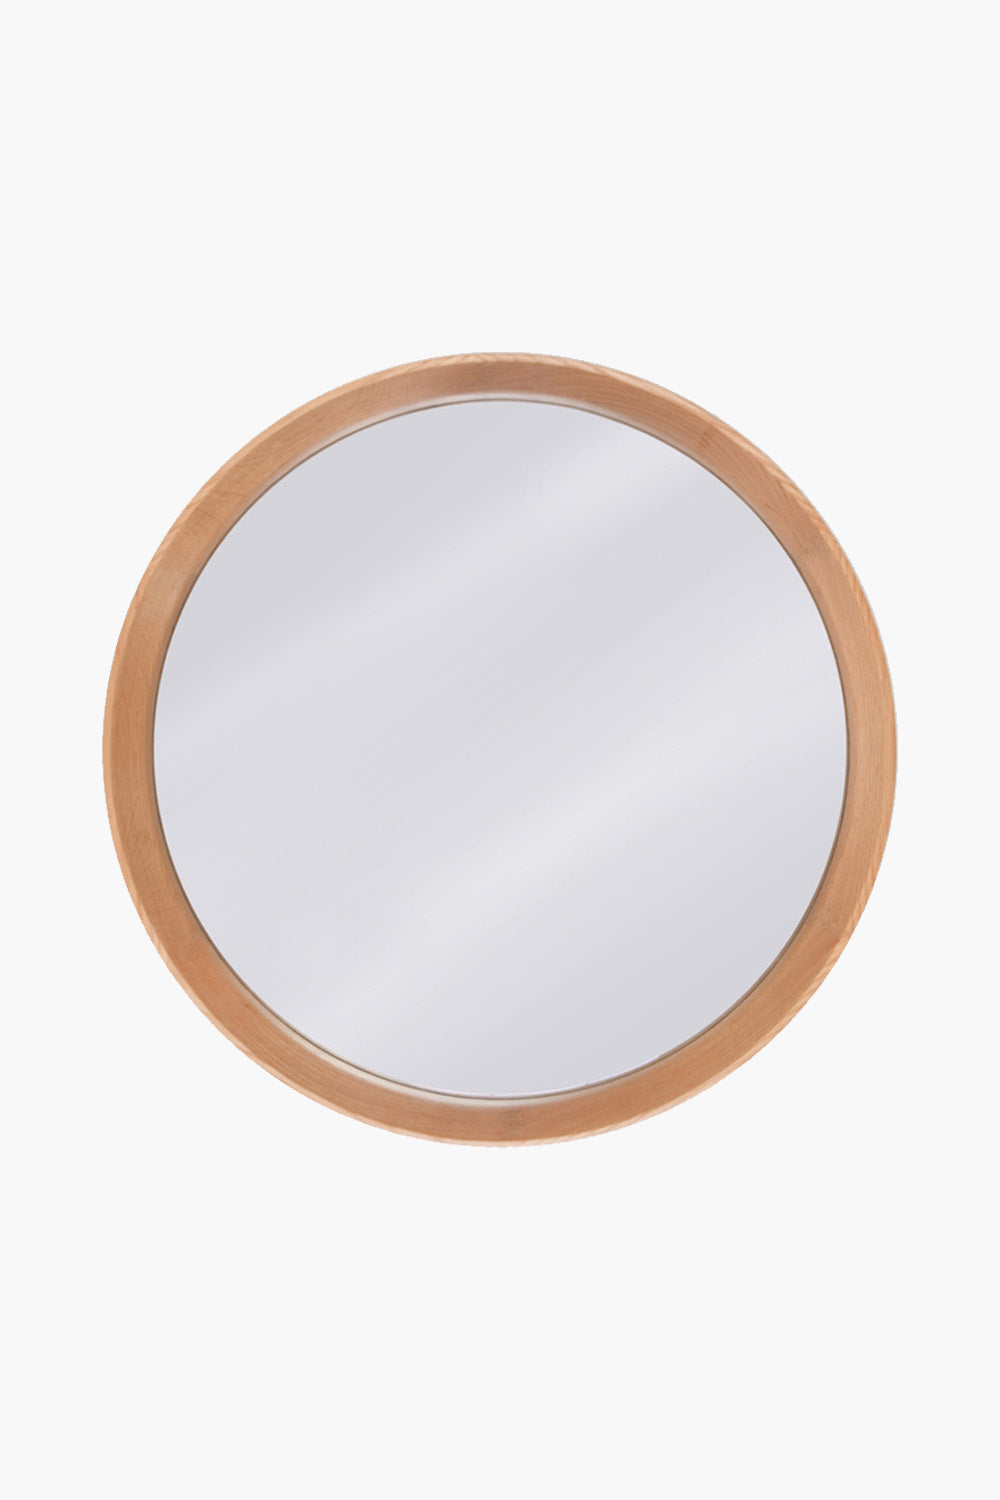 Round Solid Oak Mirror